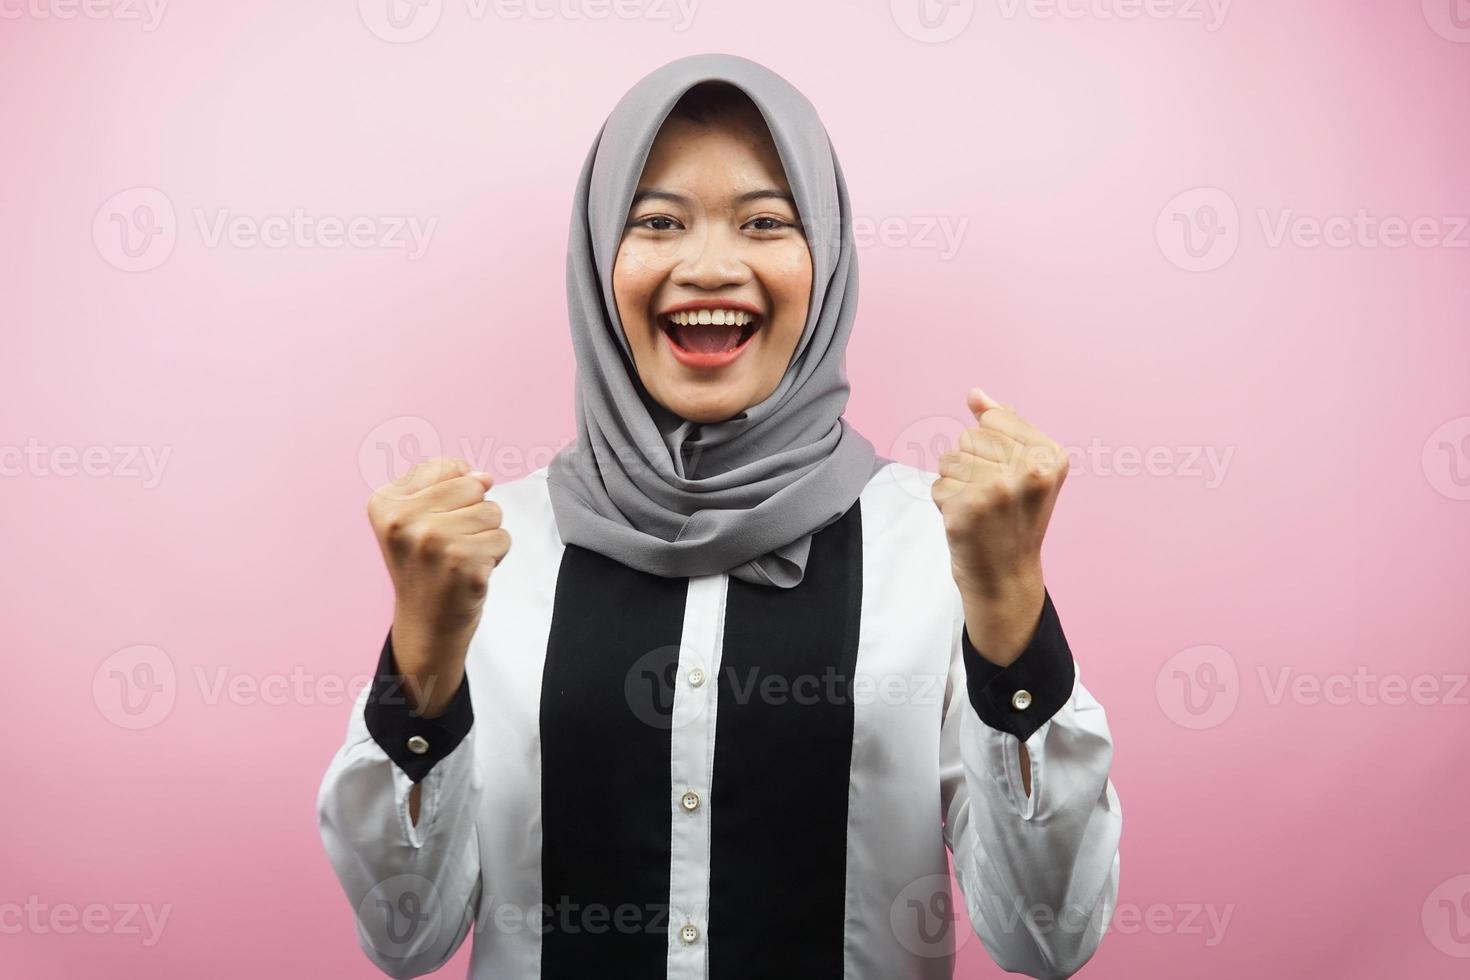 schöne junge asiatische muslimische frau, die selbstbewusst, enthusiastisch und fröhlich mit geballten händen lächelt, zeichen des erfolgs, schlagen, kämpfen, keine angst, einzeln auf rosa hintergrund foto